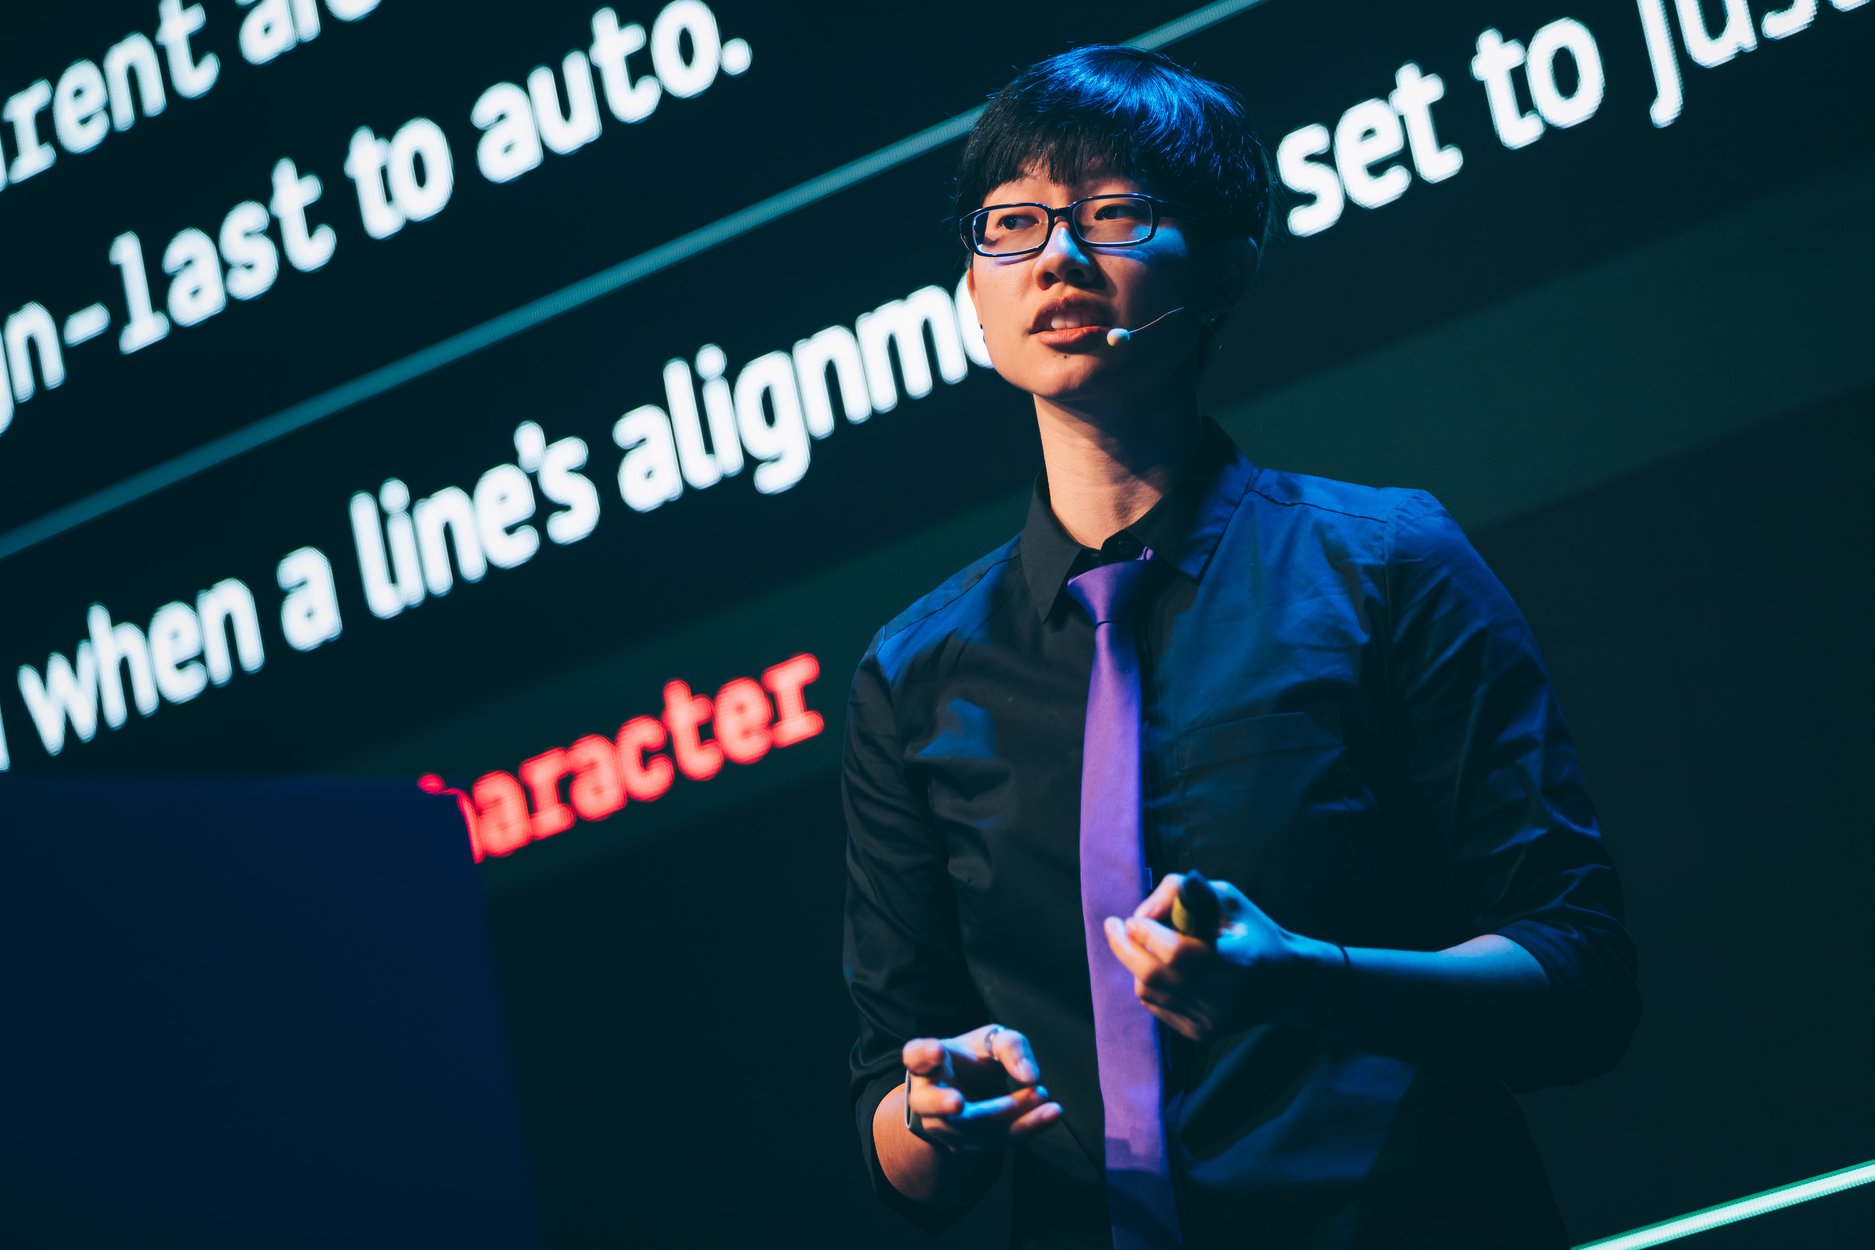 چن هوی جینگ روی صحنه در مقابل یک صفحه نمایش بزرگ که اسلایدها را نشان می دهد صحبت می کند.